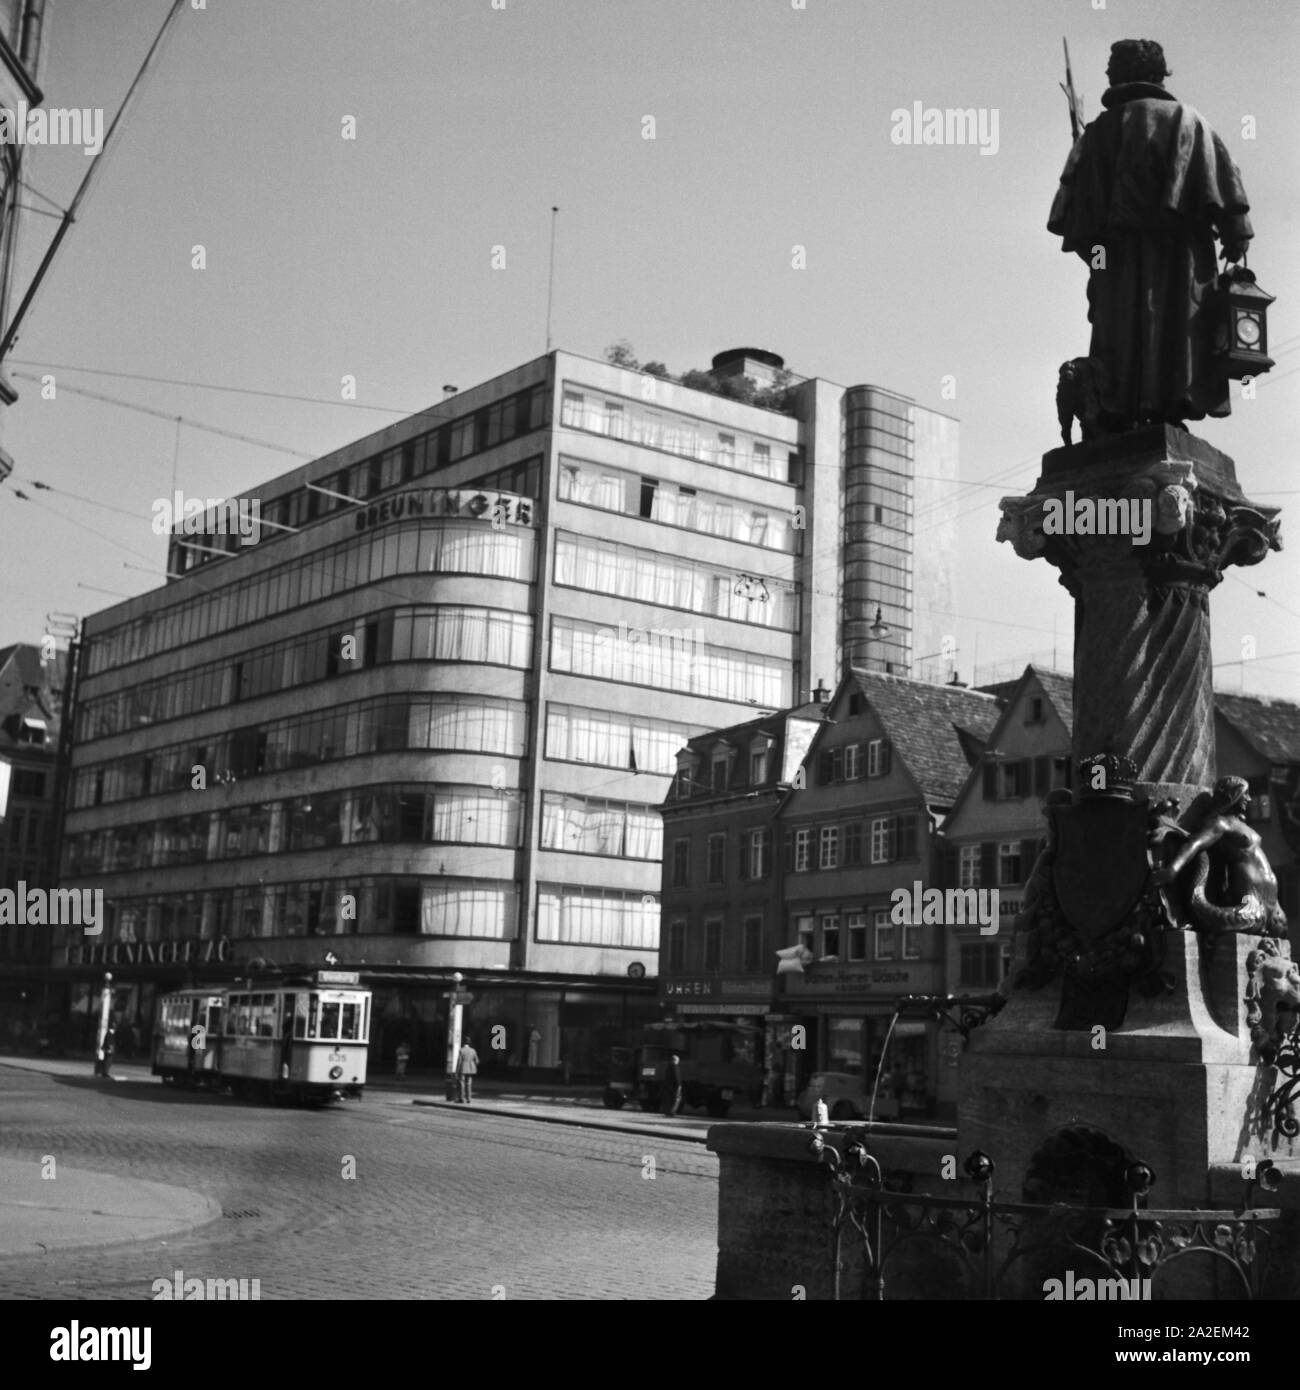 Modehaus Breuninger am Leonhardsplatz a Stoccarda, Deutschland 1930er Jahre. Breuninger del fashion store a Leonhadsplatz square a Stuttgart, Germania 1930s. Foto Stock